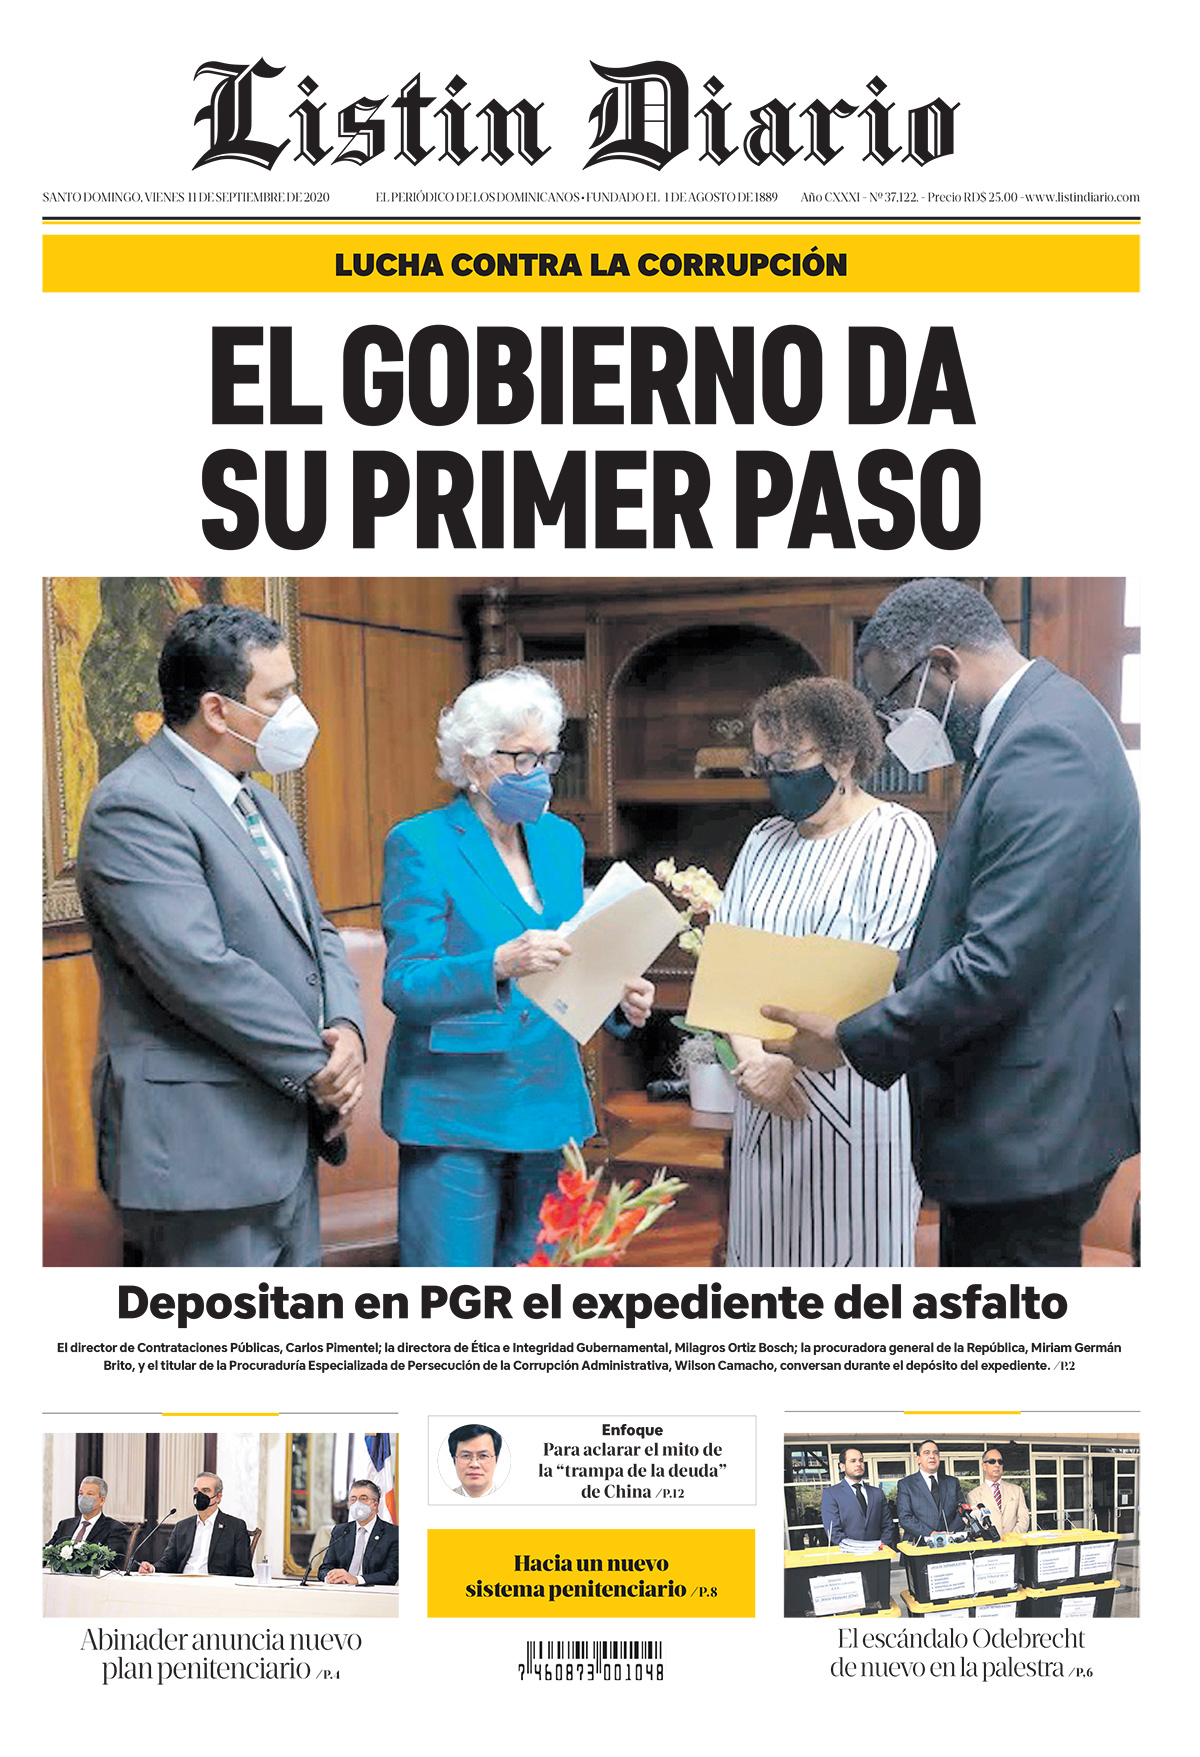 Portada Periódico Listín Diario, Viernes 11 de Septiembre, 2020